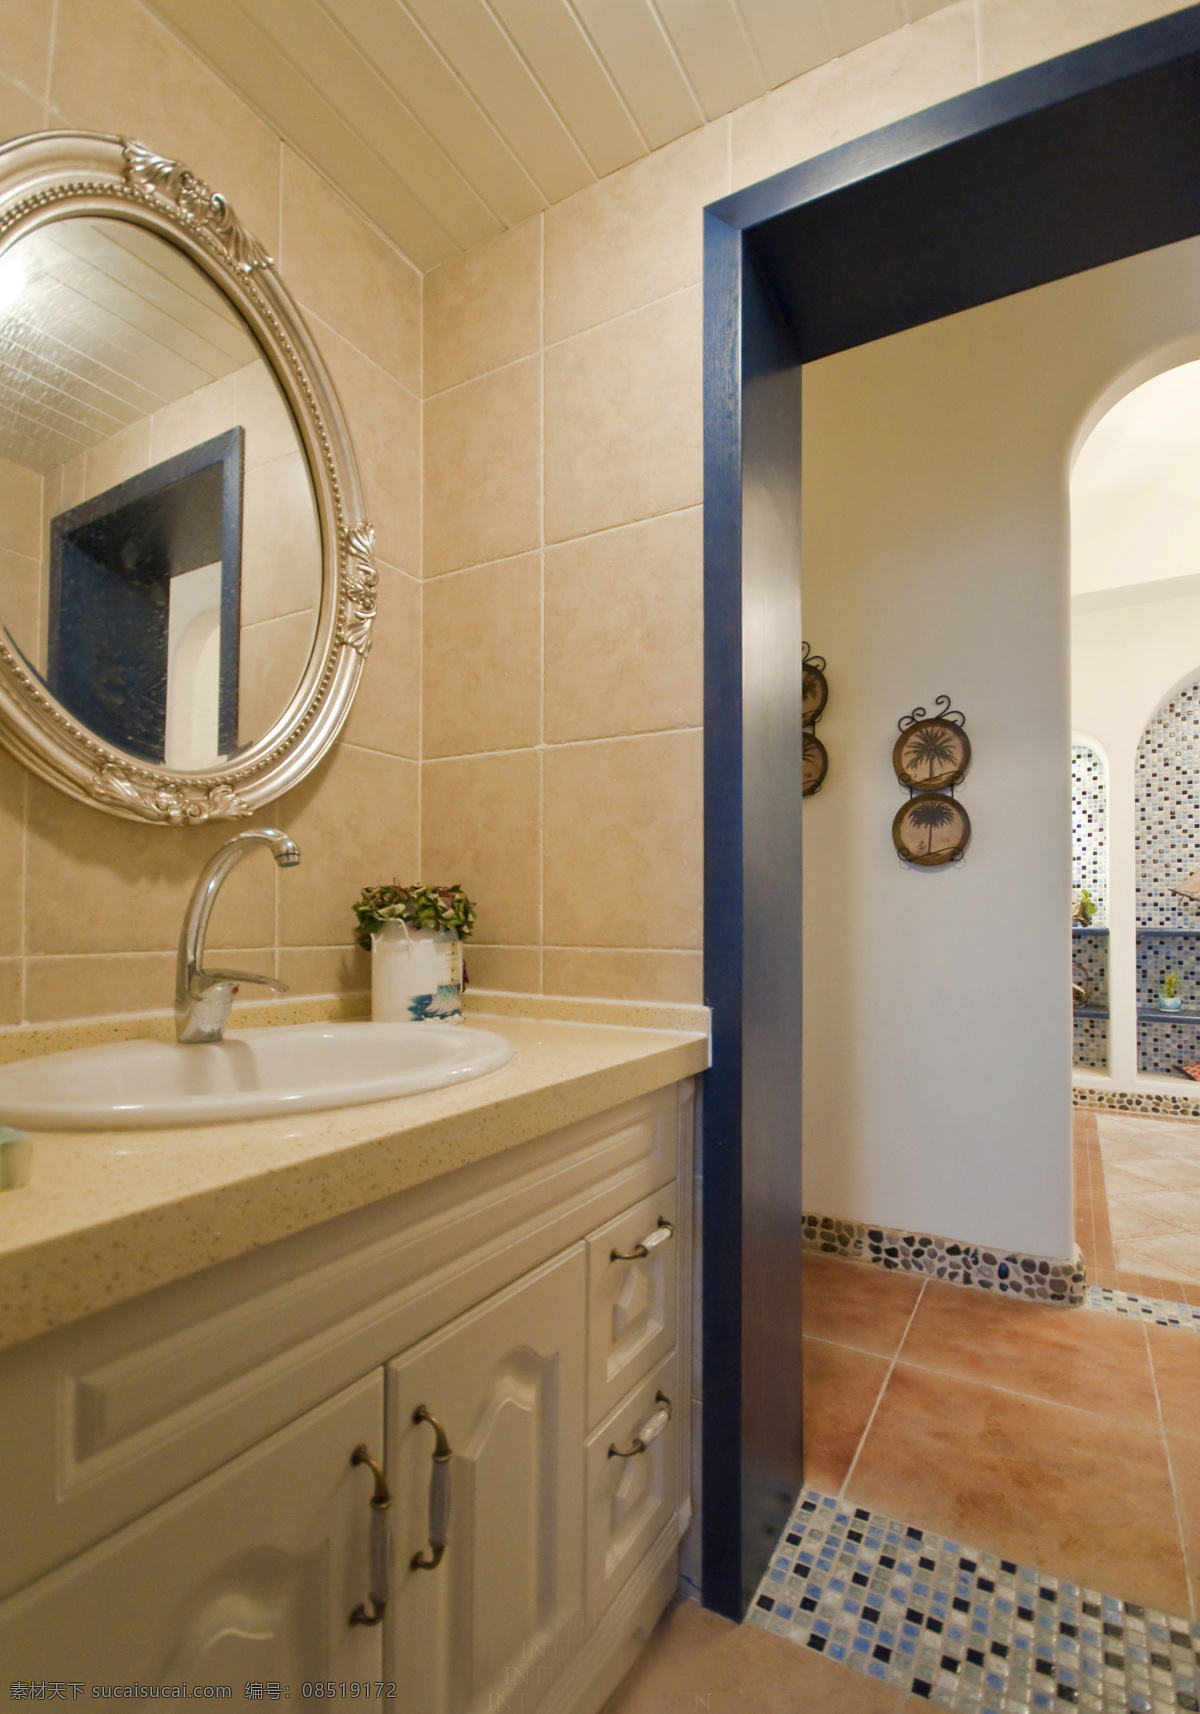 现代 时尚 浴室 黄褐色 背景 墙 室内装修 效果图 黄褐色地板 斑点地板 金边镜子 浅色洗手台